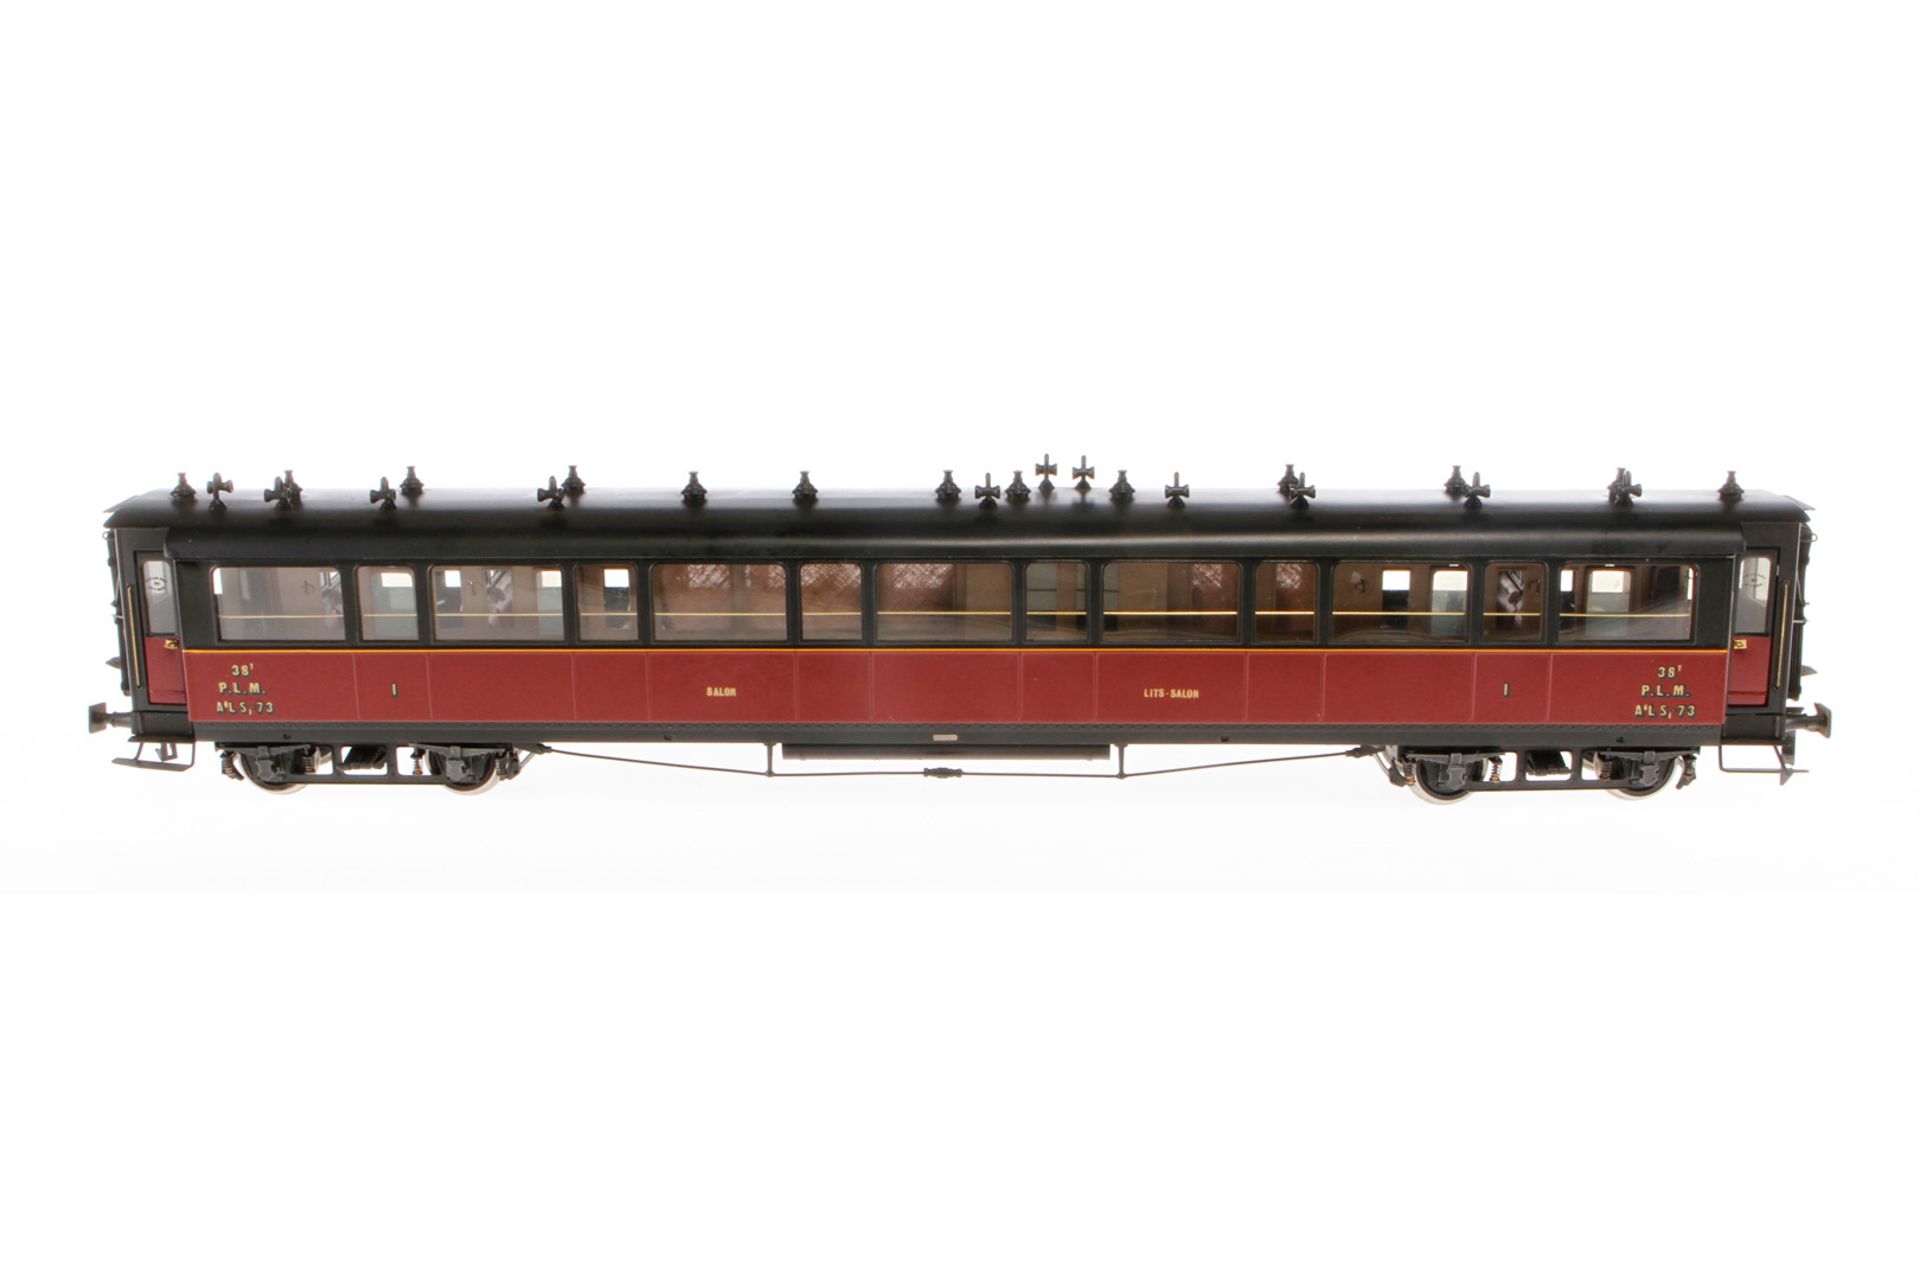 Elettren franz. Salon-/Schlafwagen 38 PLM, Spur 0, 1. Klasse, schwarz/rot, mit Inneneinrichtung